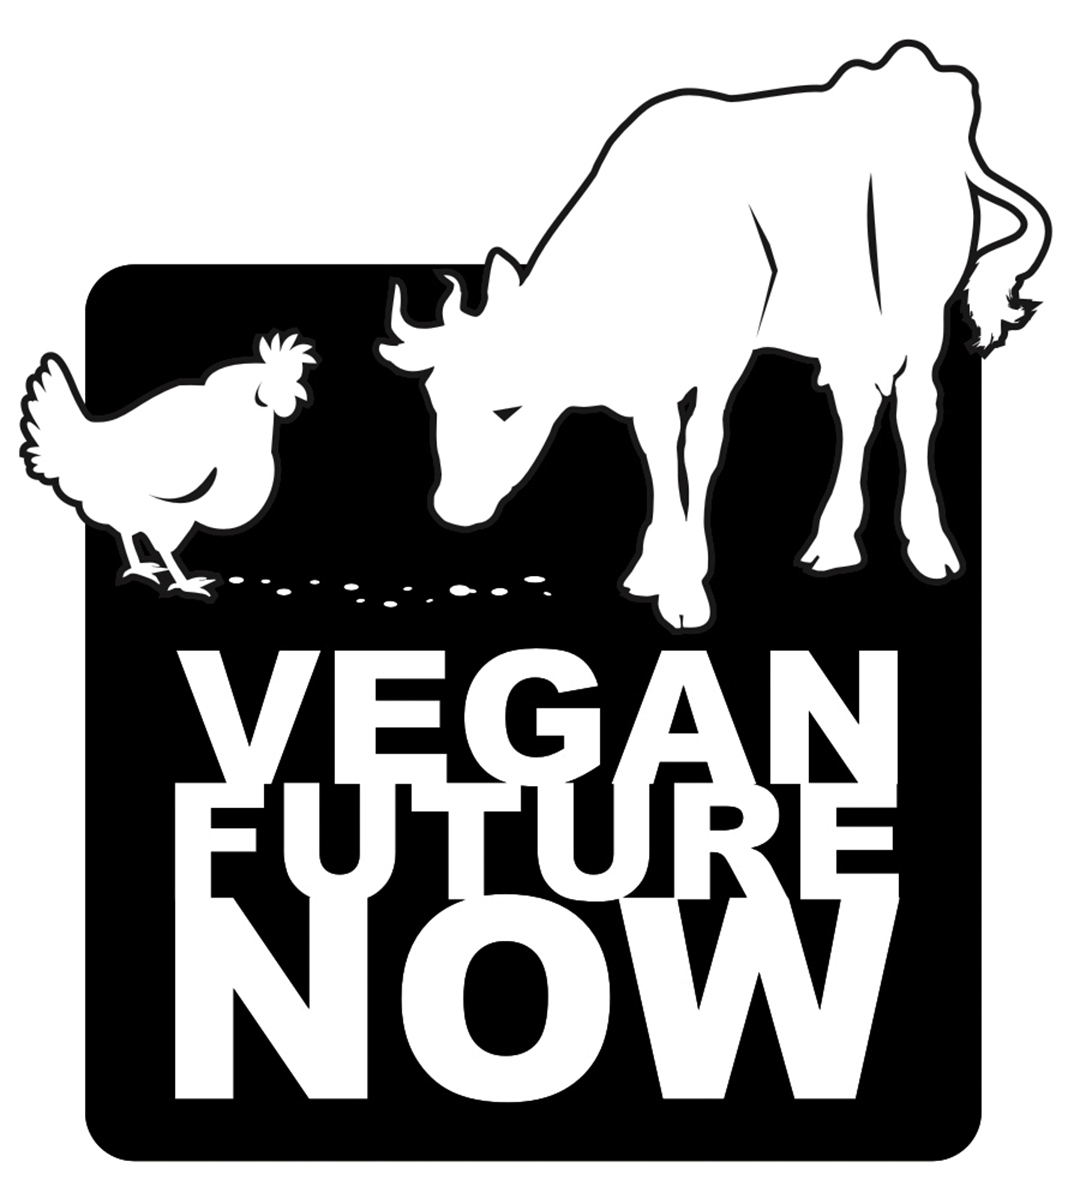 Vegan Future Now